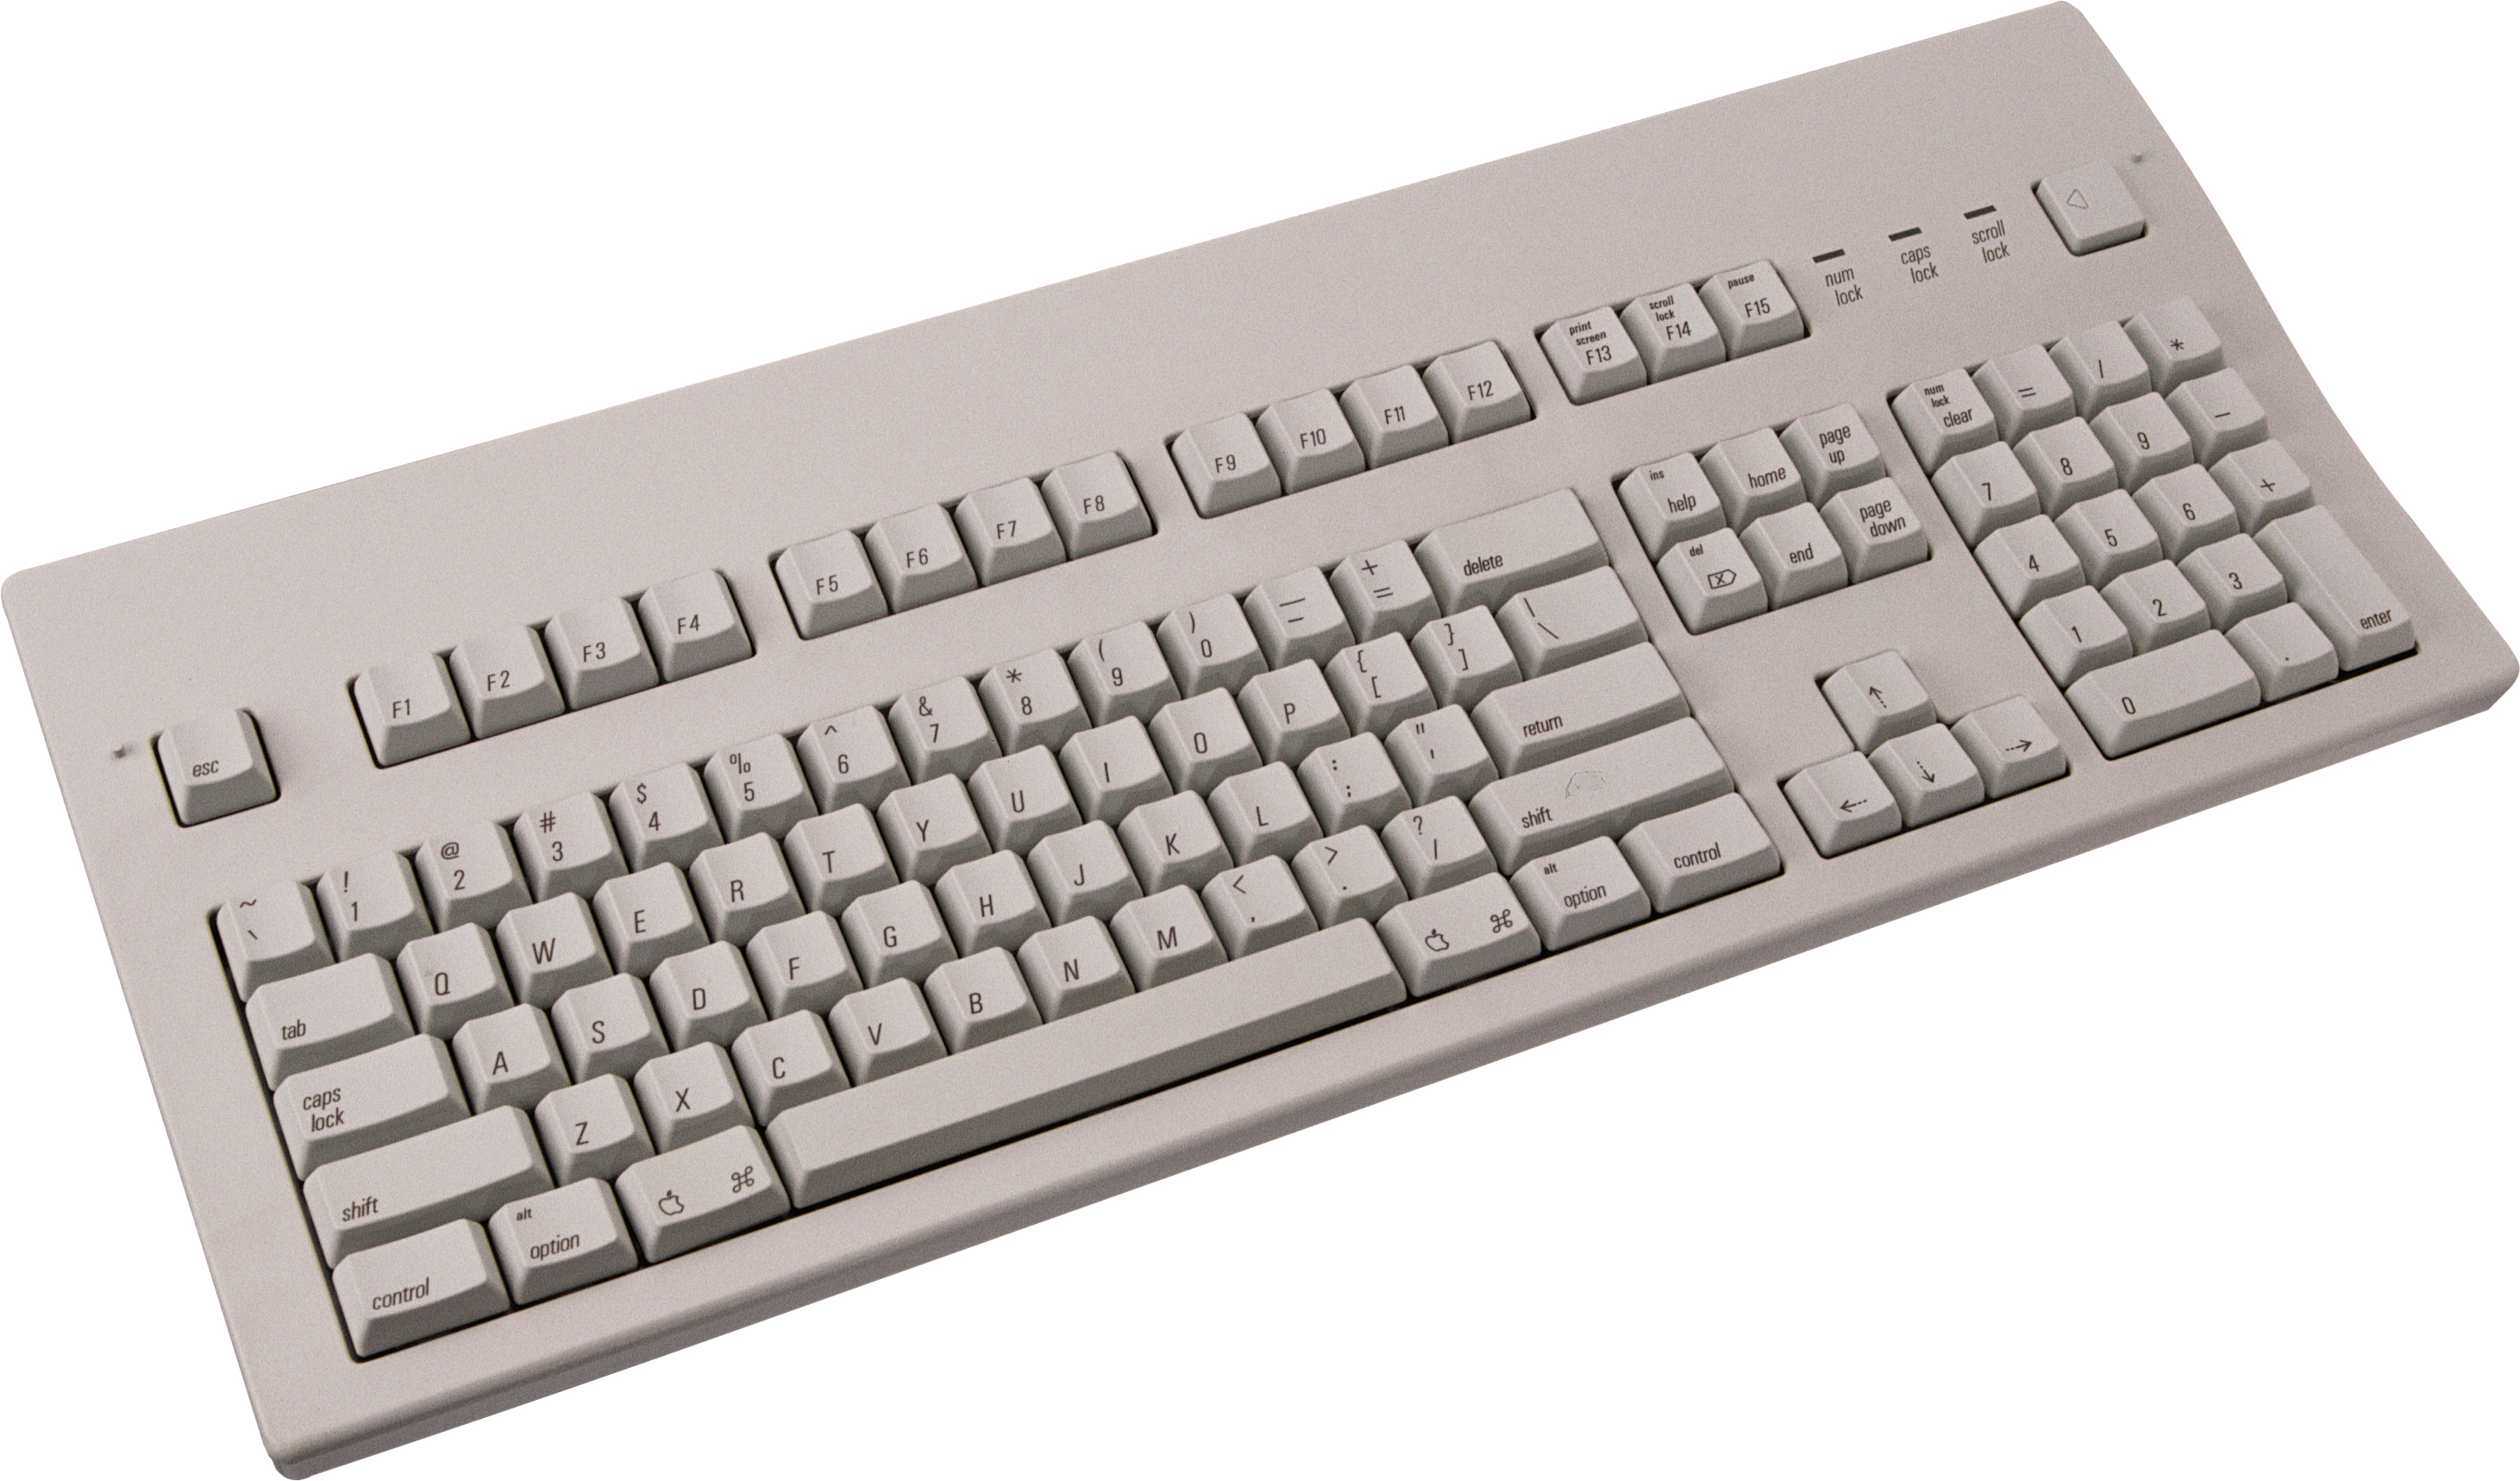 Keyboard PNG image